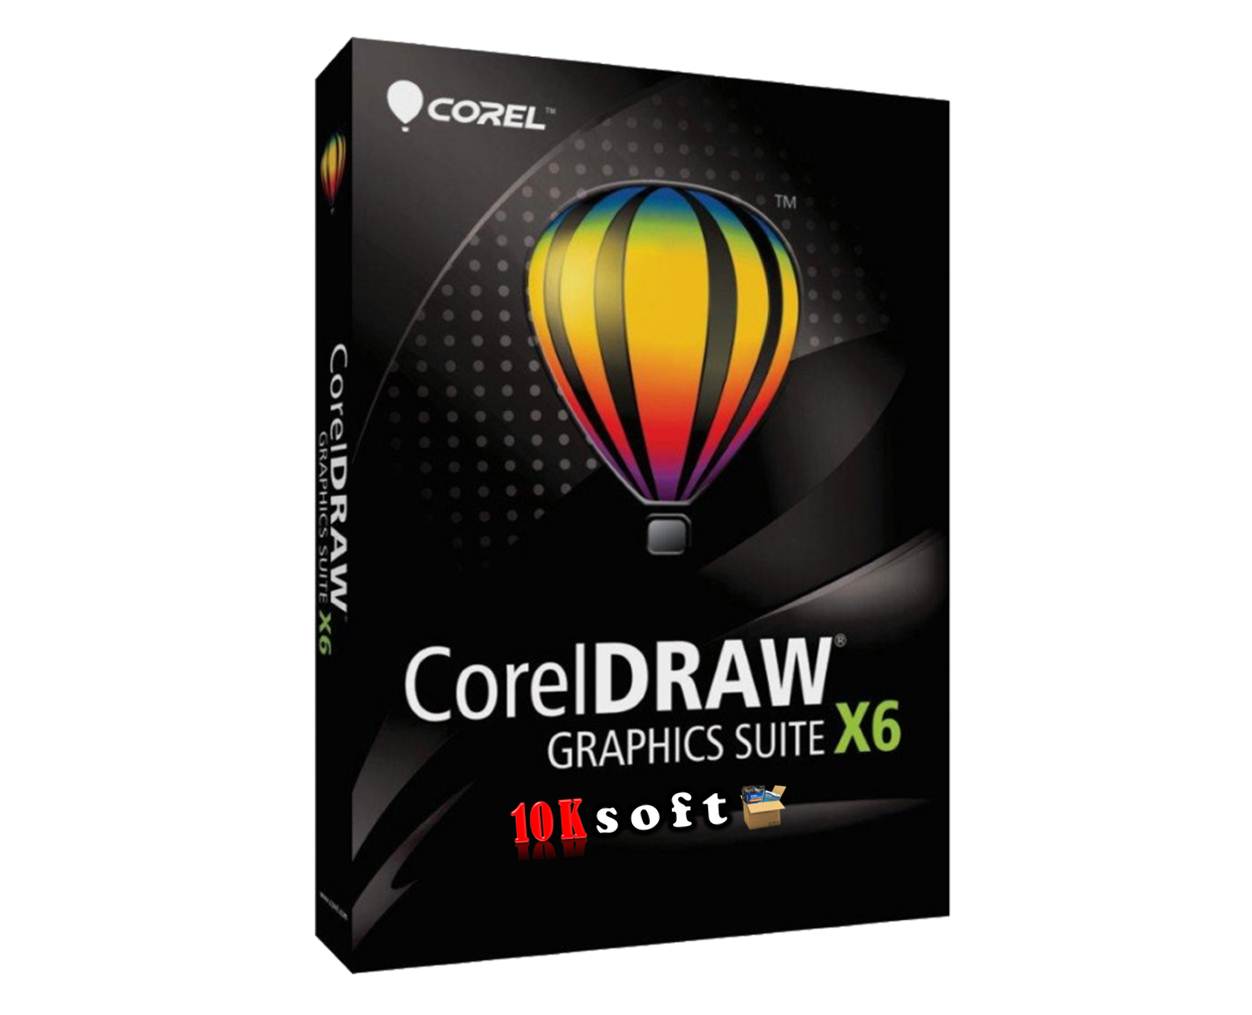 coreldraw graphics suite x6 download 64 bit